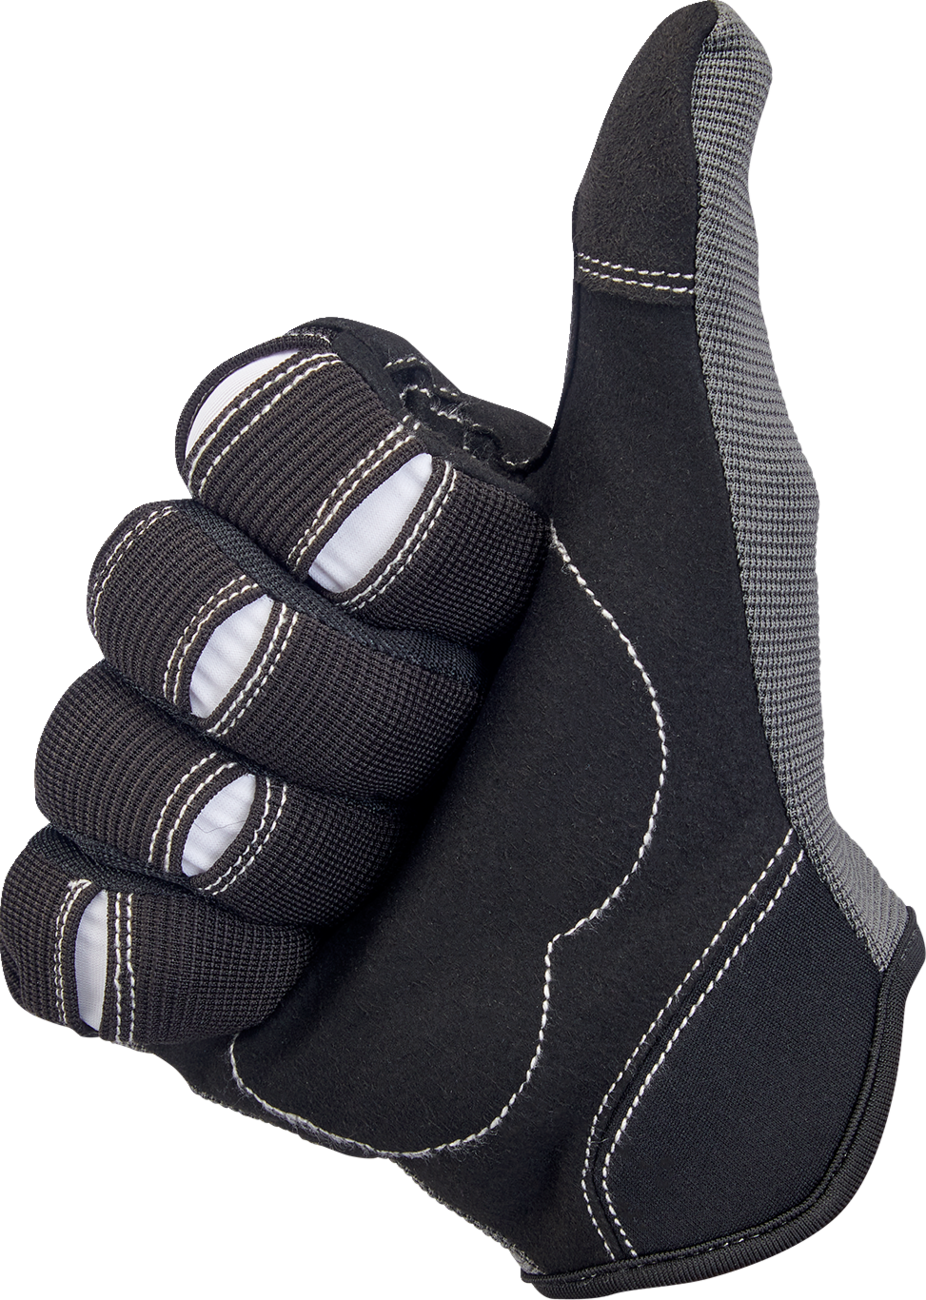 BILTWELL Moto Gloves - Gray/Black - 2XL 1501-1101-006